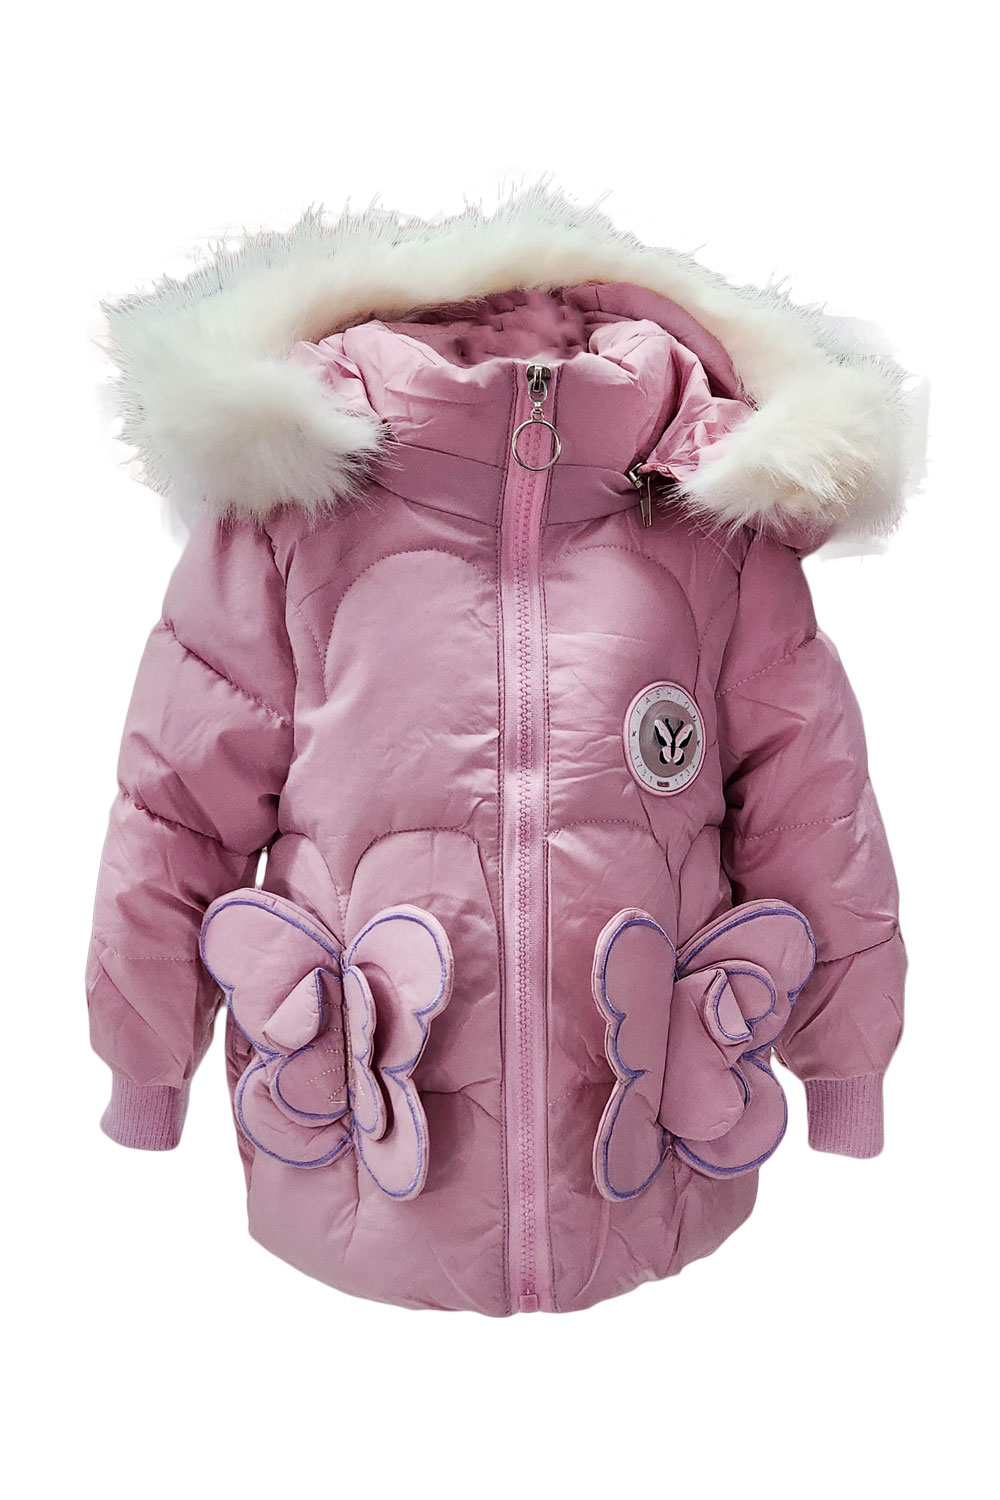 Large universe Closely saddle Geaca iarna pentru fetite, model Aba, culore roz - Hainute Trendy